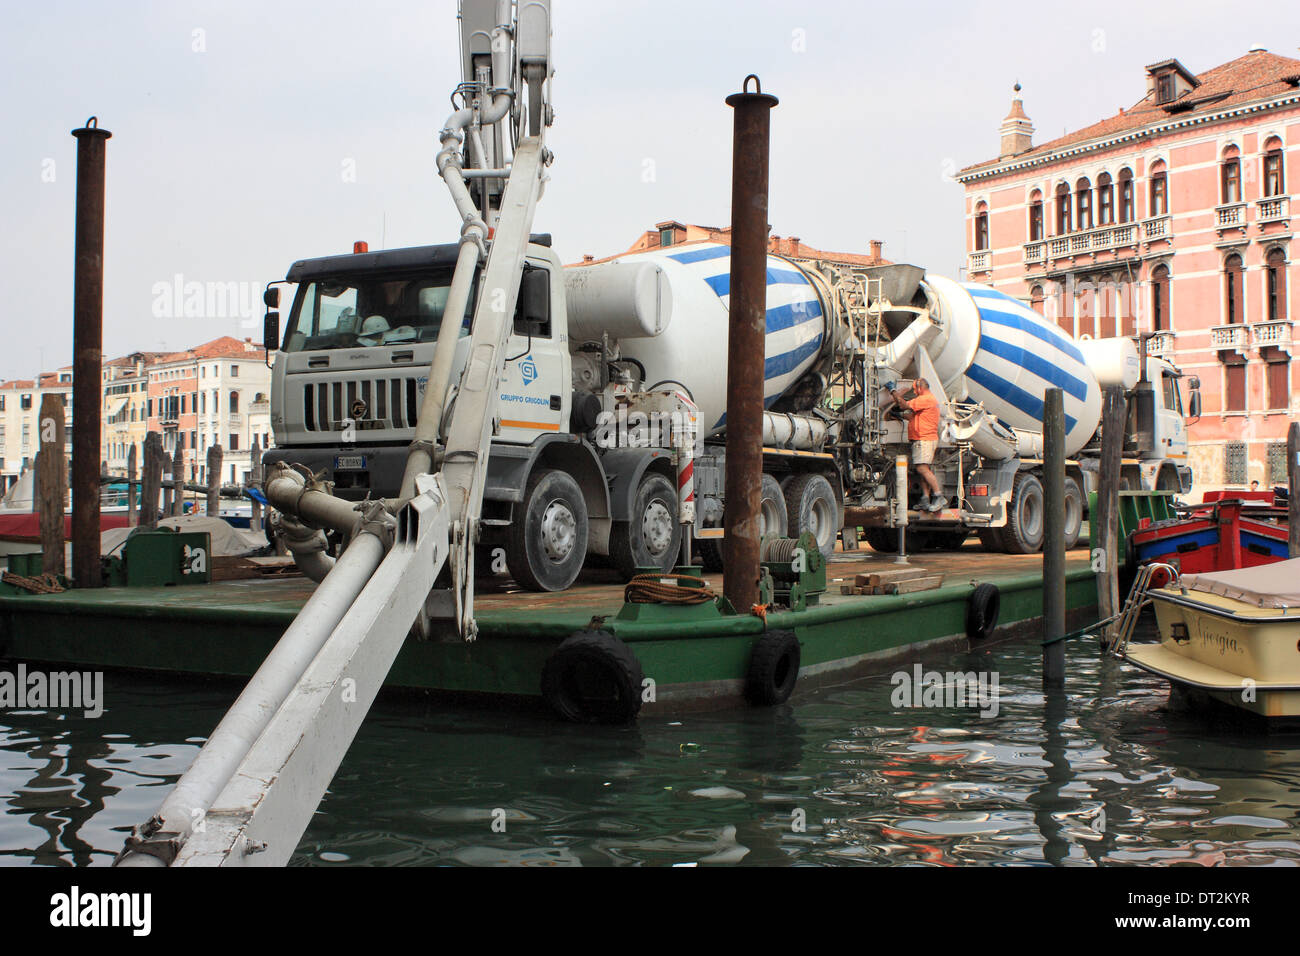 Construction works in Venice by Errico Costruzioni S.r.l Stock Photo - Alamy